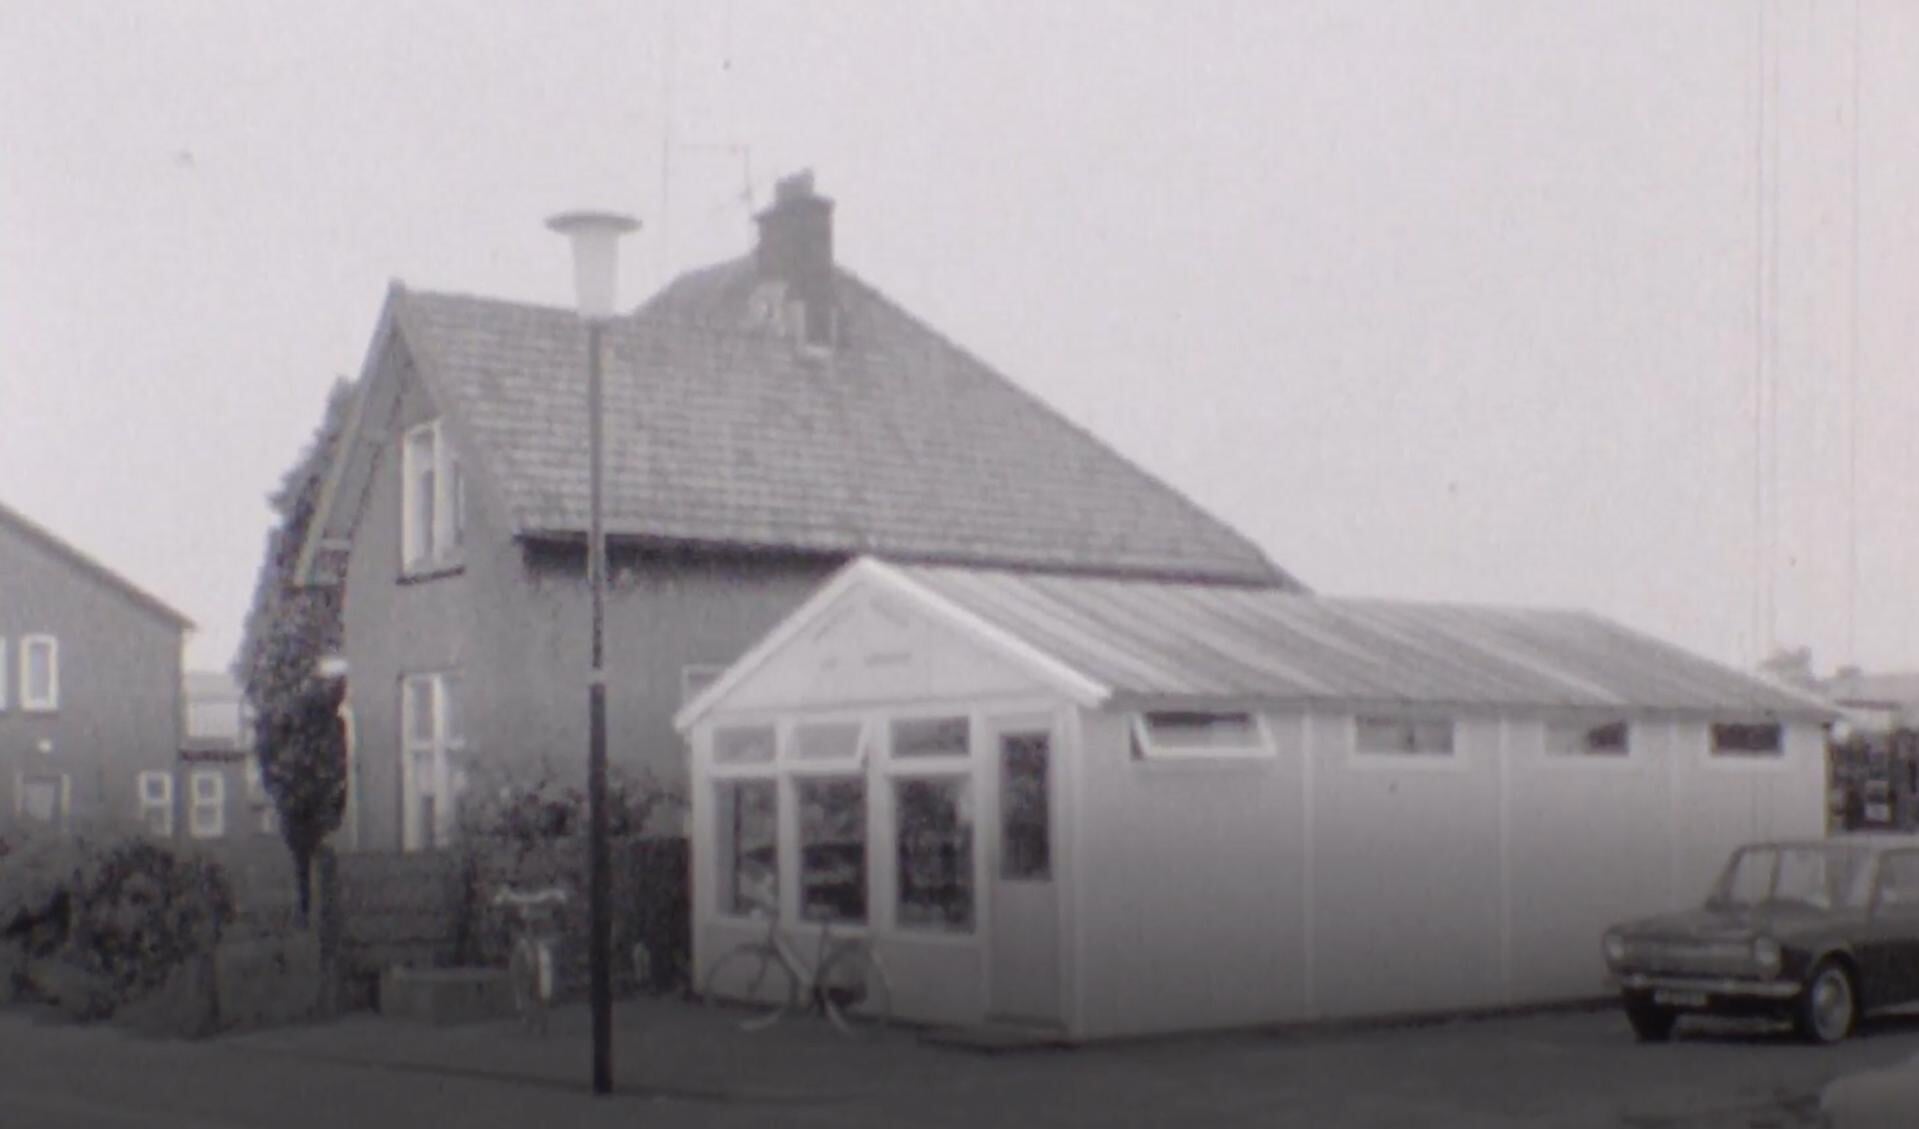 De onderwijzerswoning in 1968, toen er kort een noodwinkel (groenteboer) naast stond